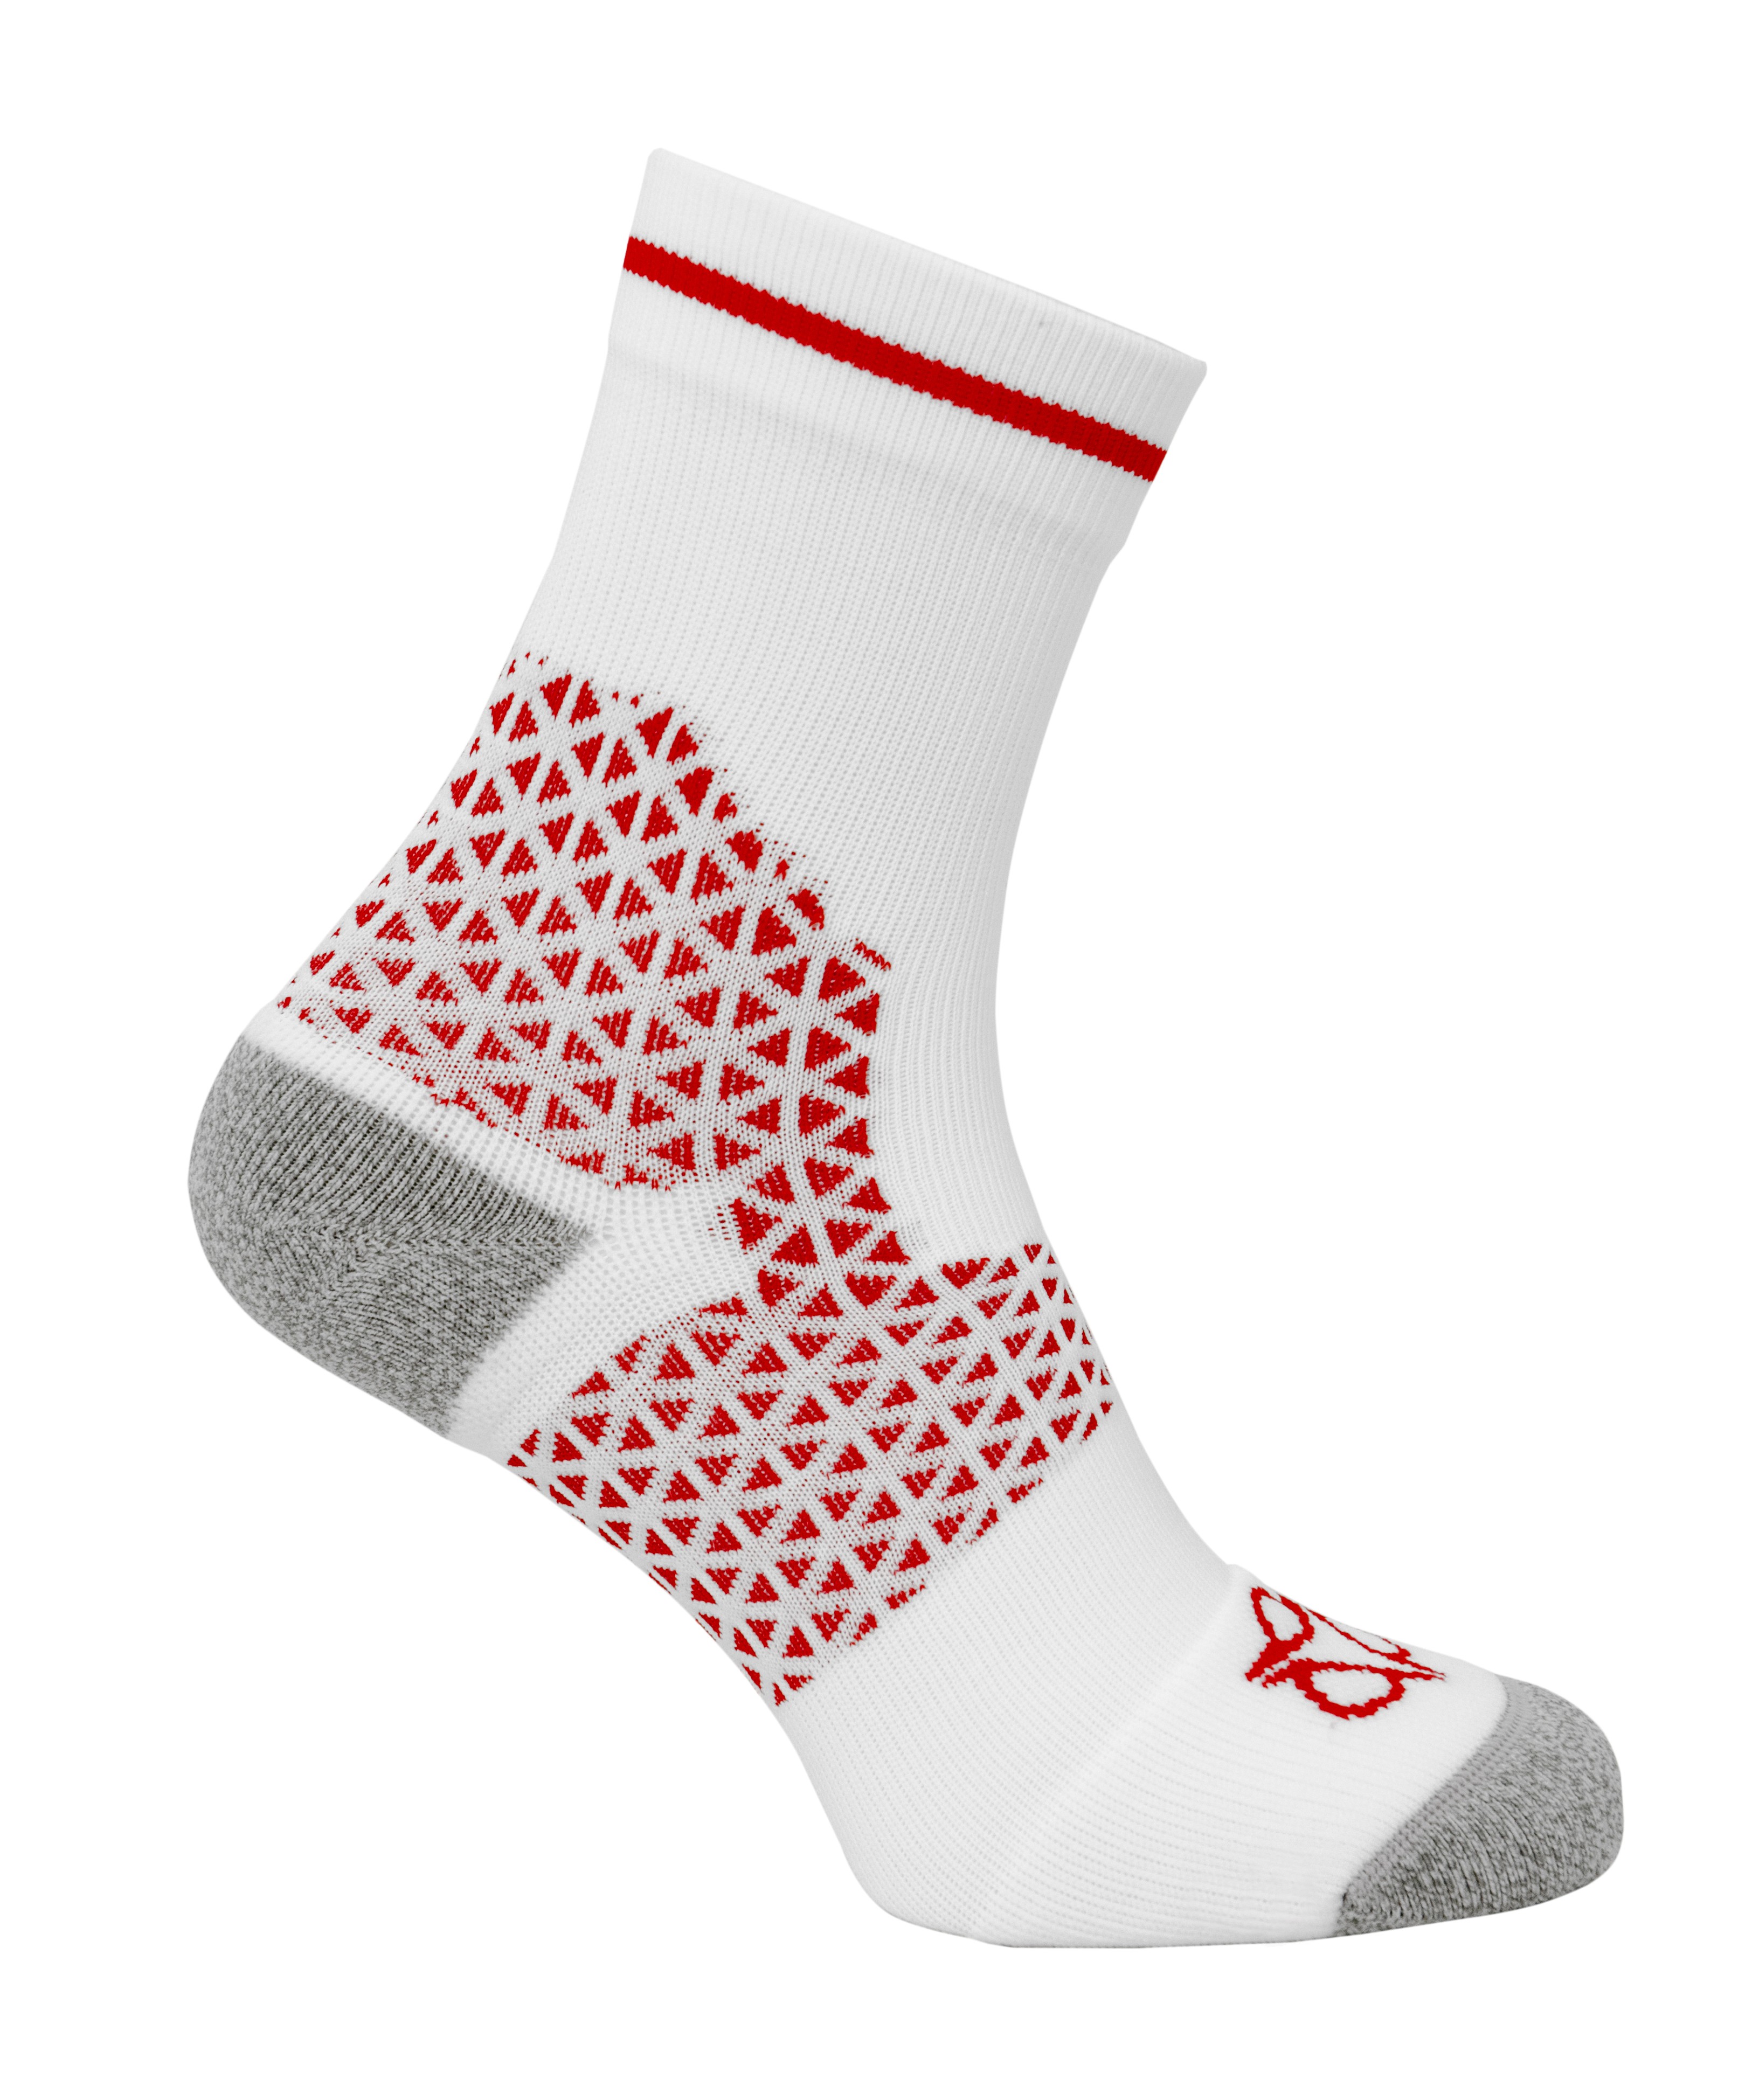 AGU Pro Summer Socks White Red